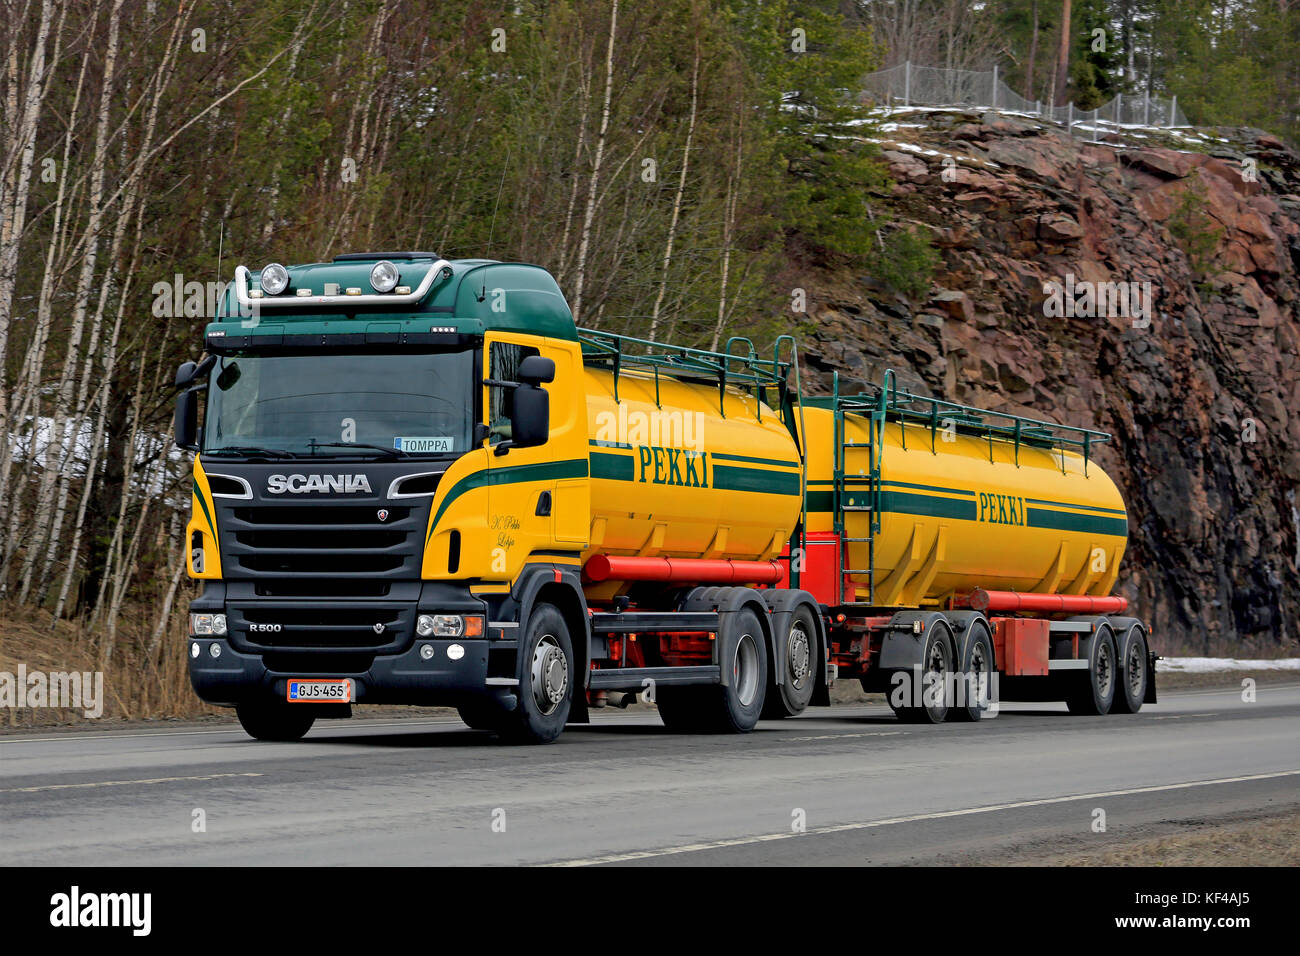 Karjaa, Finlandia - 5 marzo 2016: scania r500 camion cisterna per trasporto alla rinfusa su strada. scania celebra 125 anni nel 2016. Foto Stock